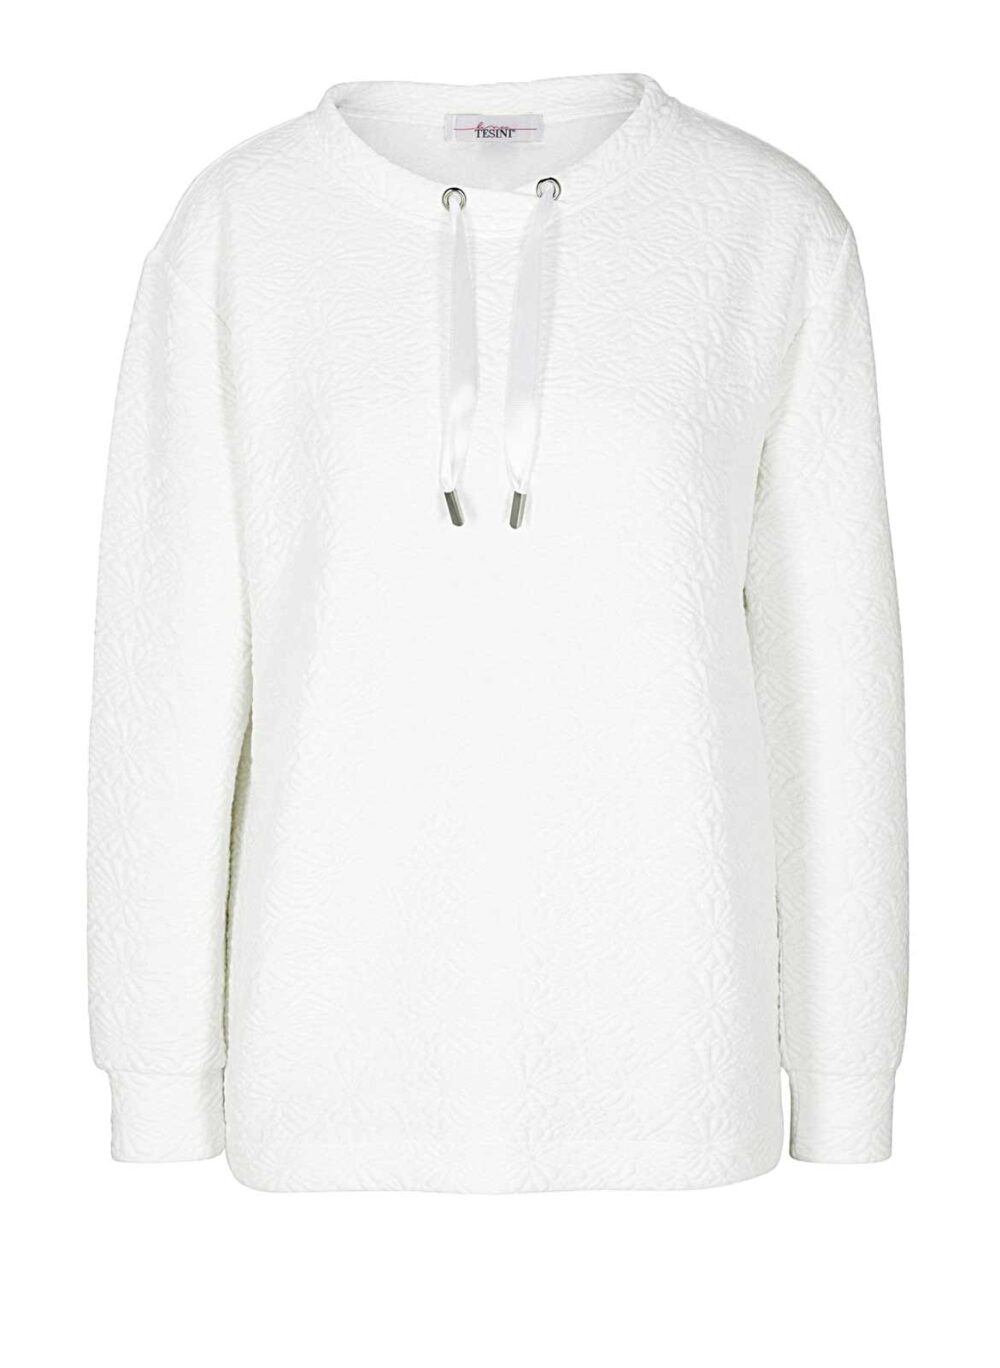 sweatshirts auf rechnung Damen Sweatshirt von Linea Tesini offwhite 201.155 MISSFORTY